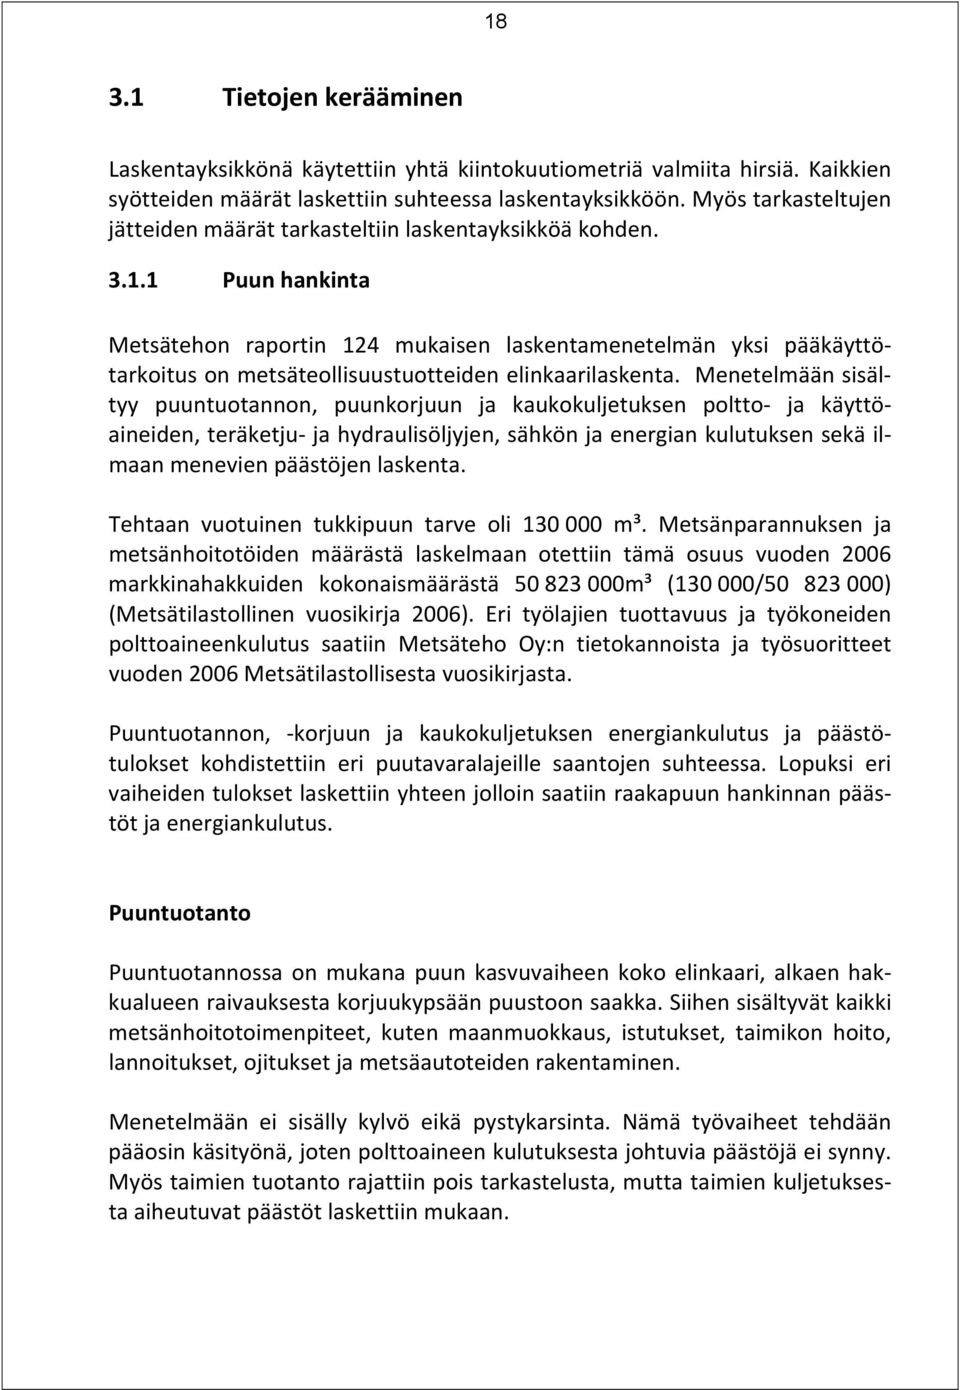 1 Puun hankinta Metsätehon raportin 124 mukaisen laskentamenetelmän yksi pääkäyttötarkoitus on metsäteollisuustuotteiden elinkaarilaskenta.